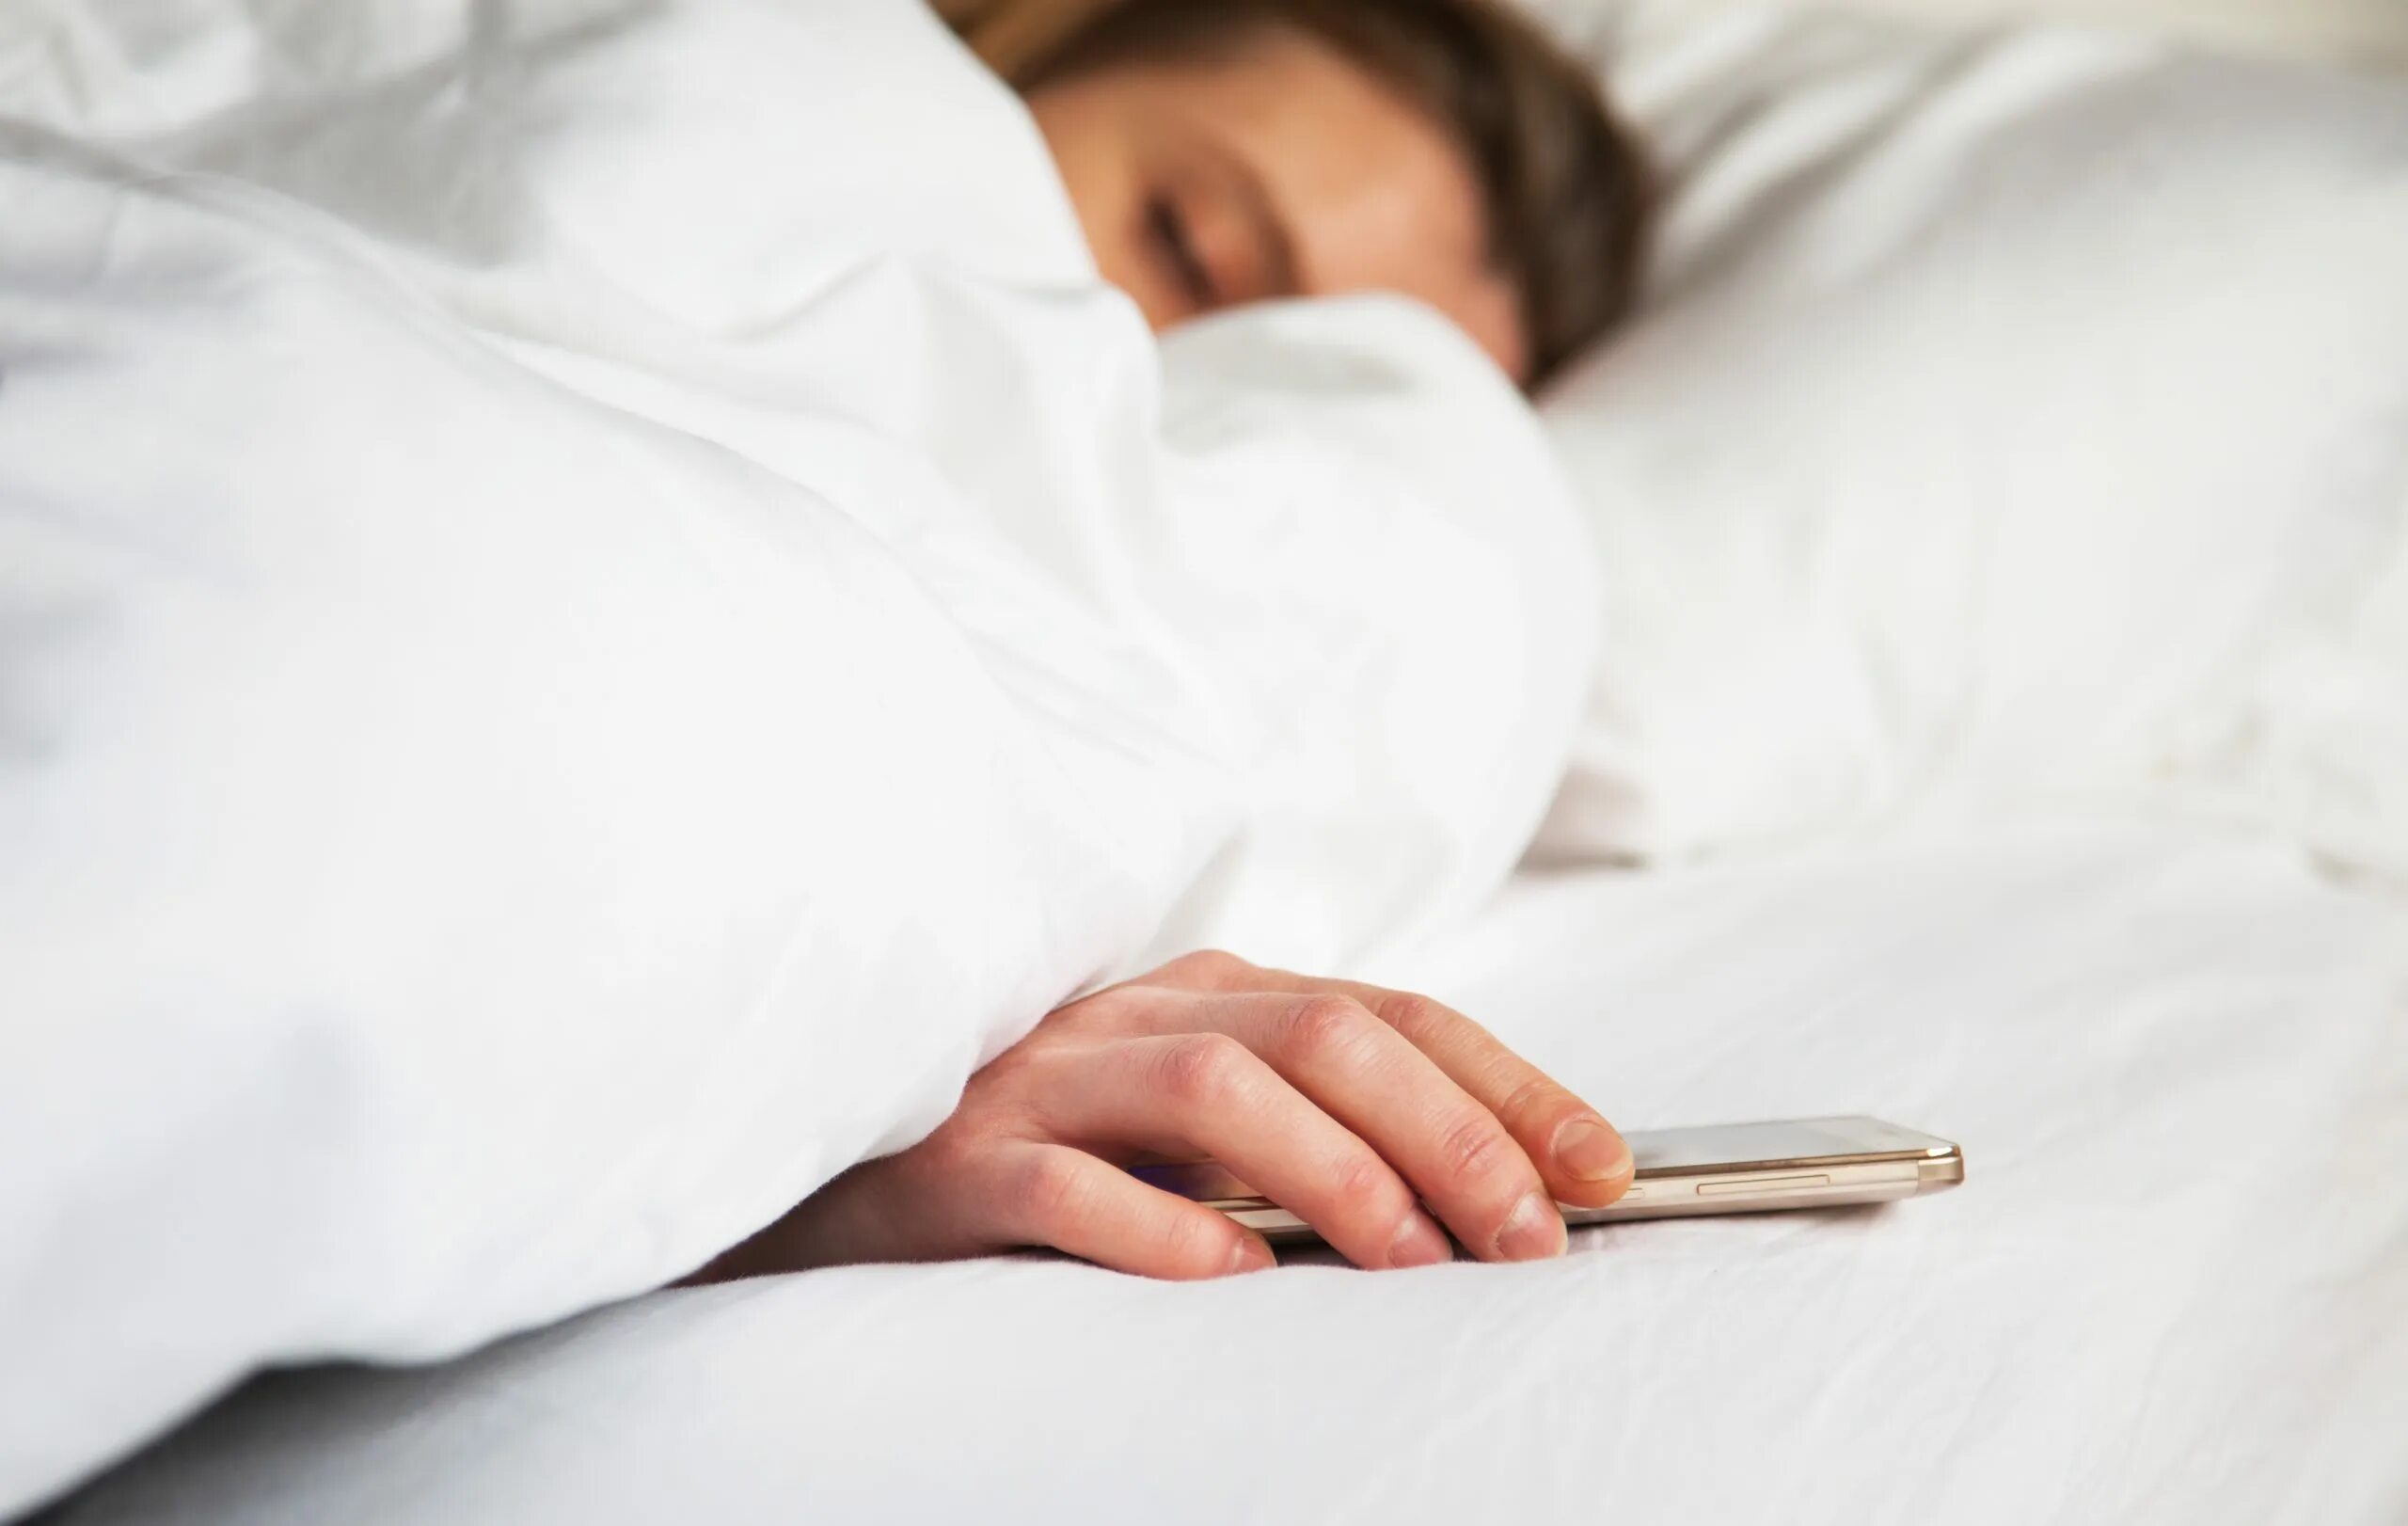 В постели с телефоном. Телефон на кровати. Человек с телефоном в кровати. Фото мужской и женской руки на тумбочке рядом с кроватью.